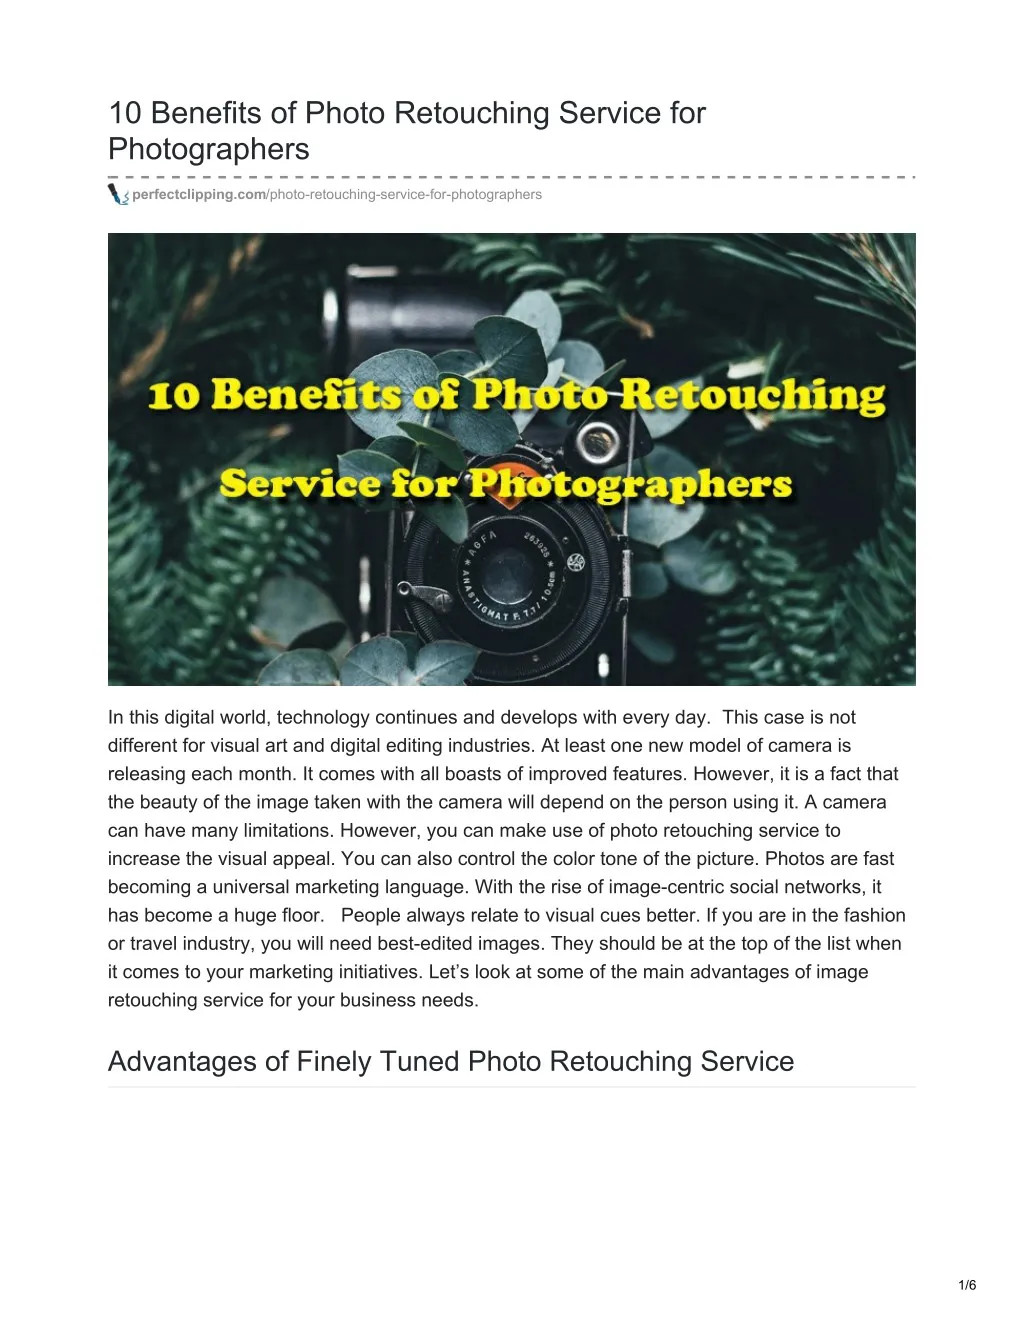 10 benefits of photo retouching service